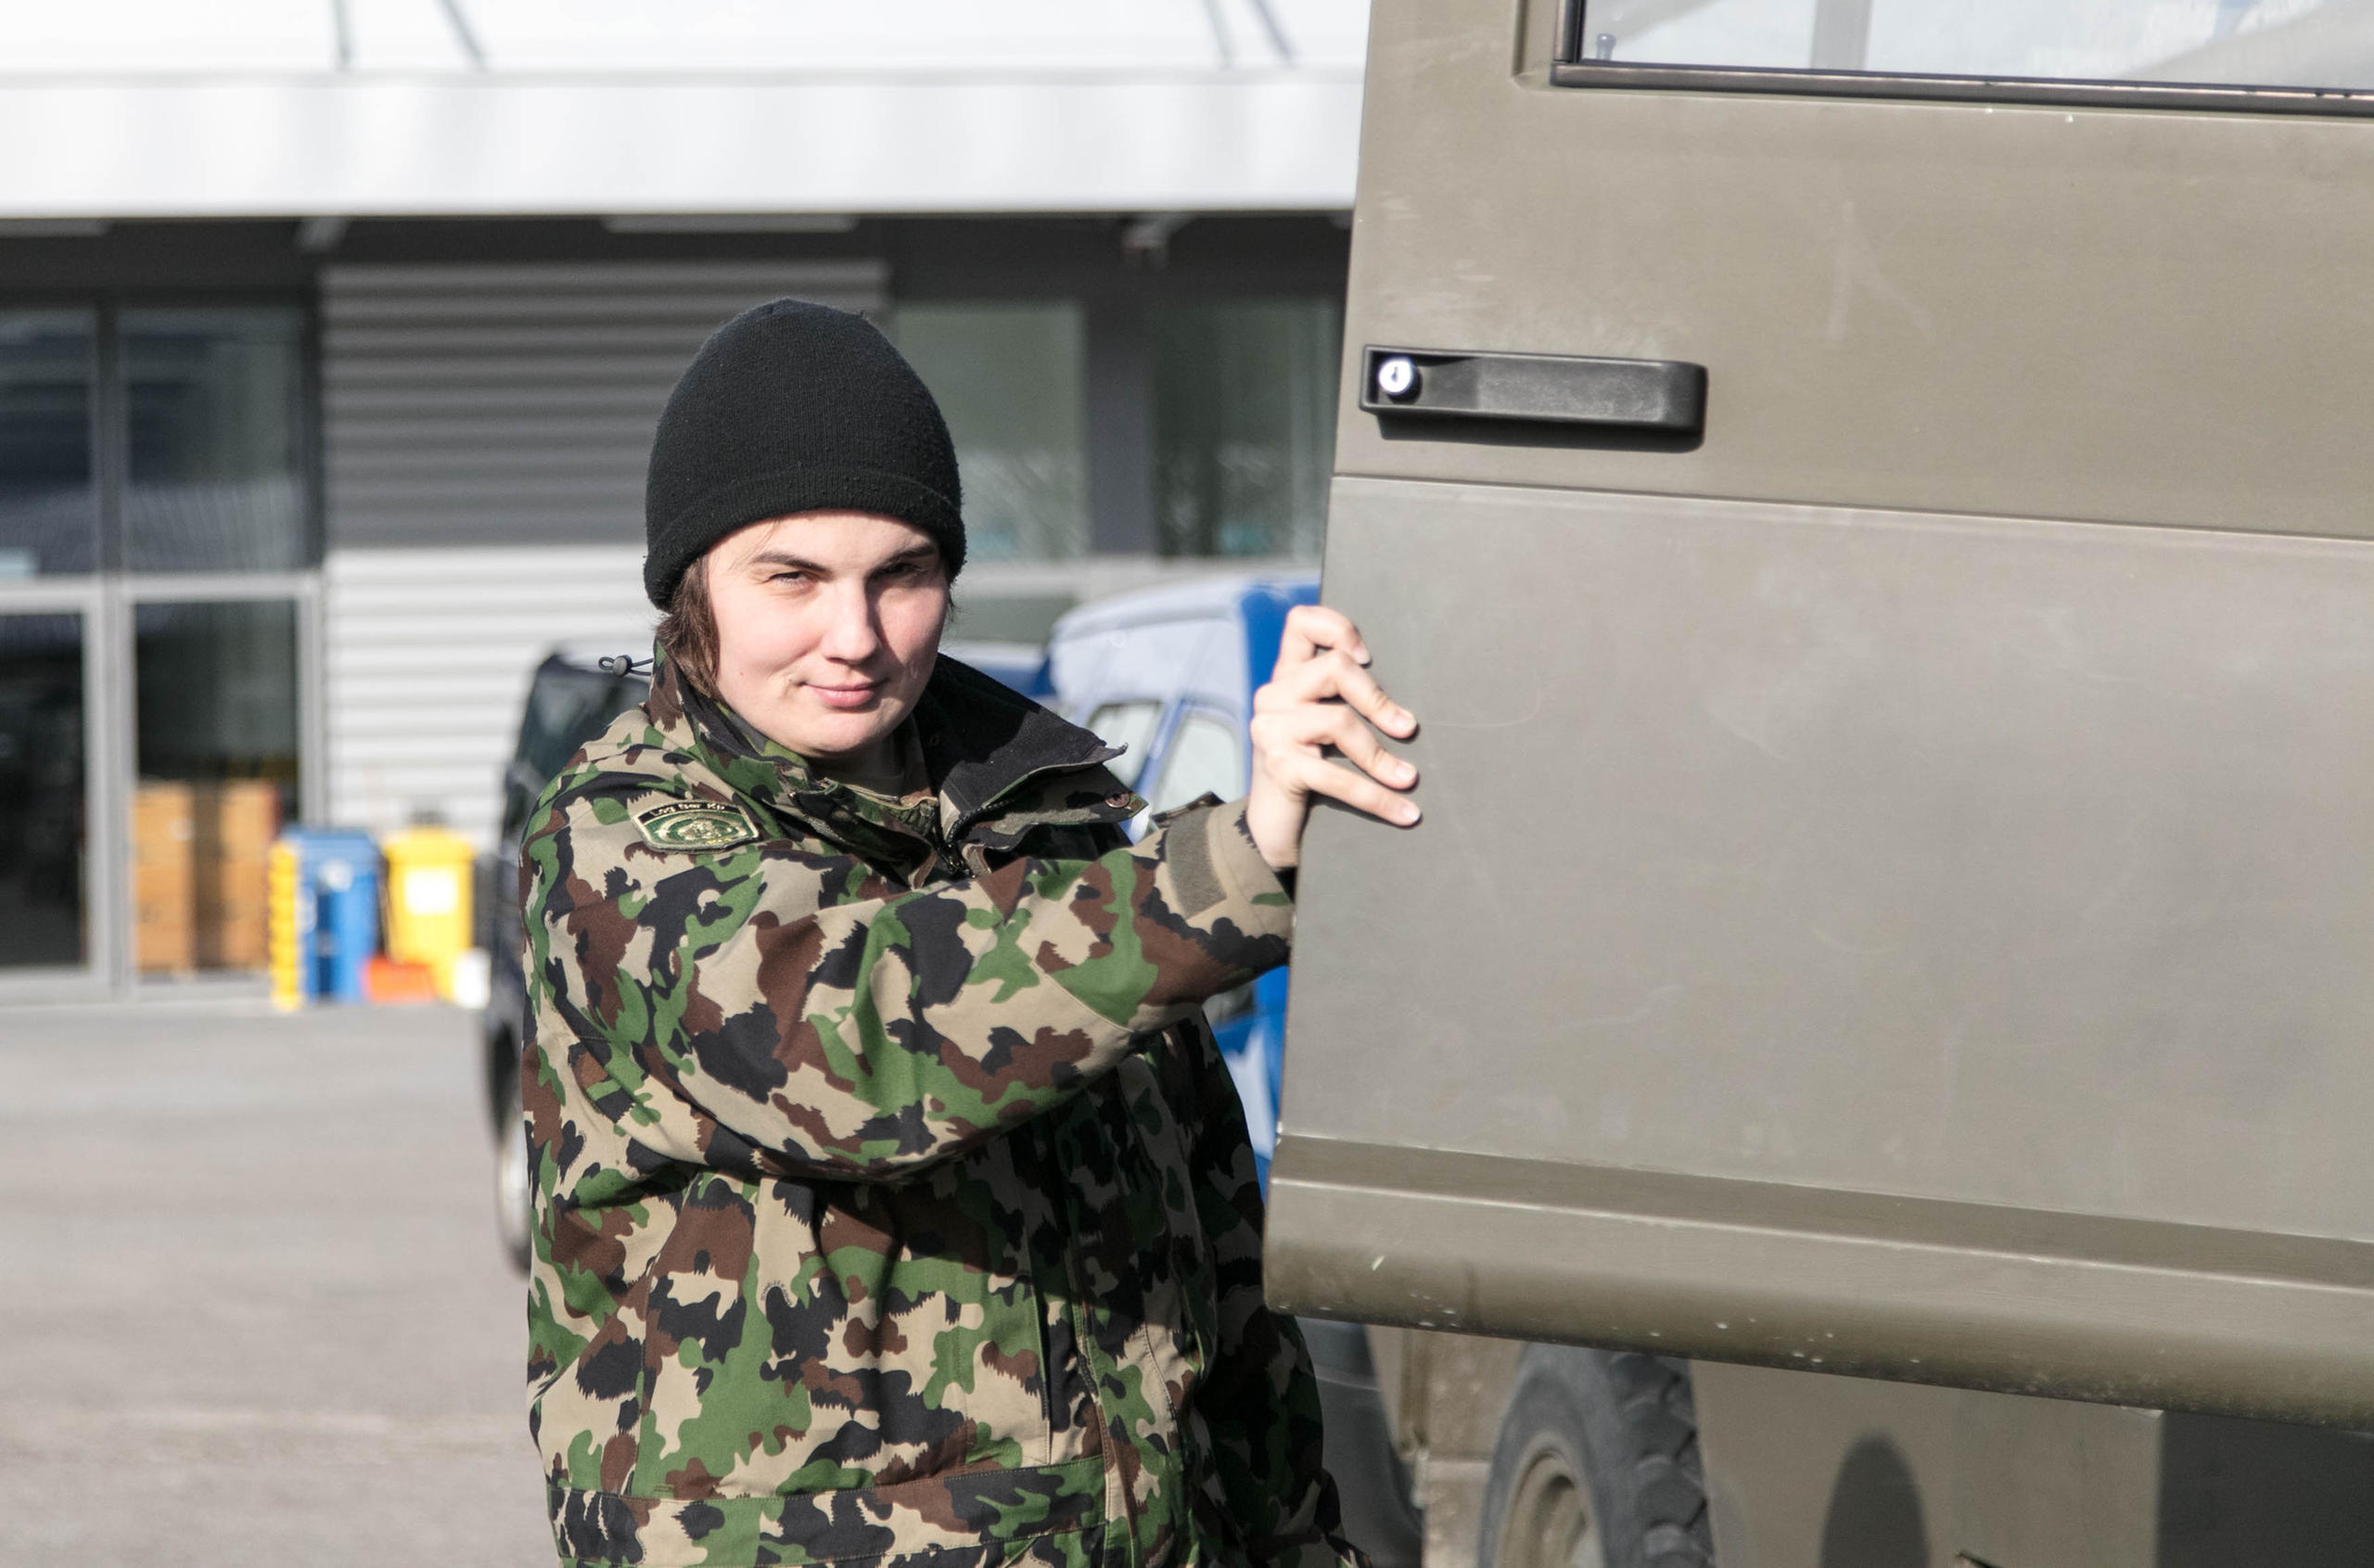 Zoé opens the door of her army truck